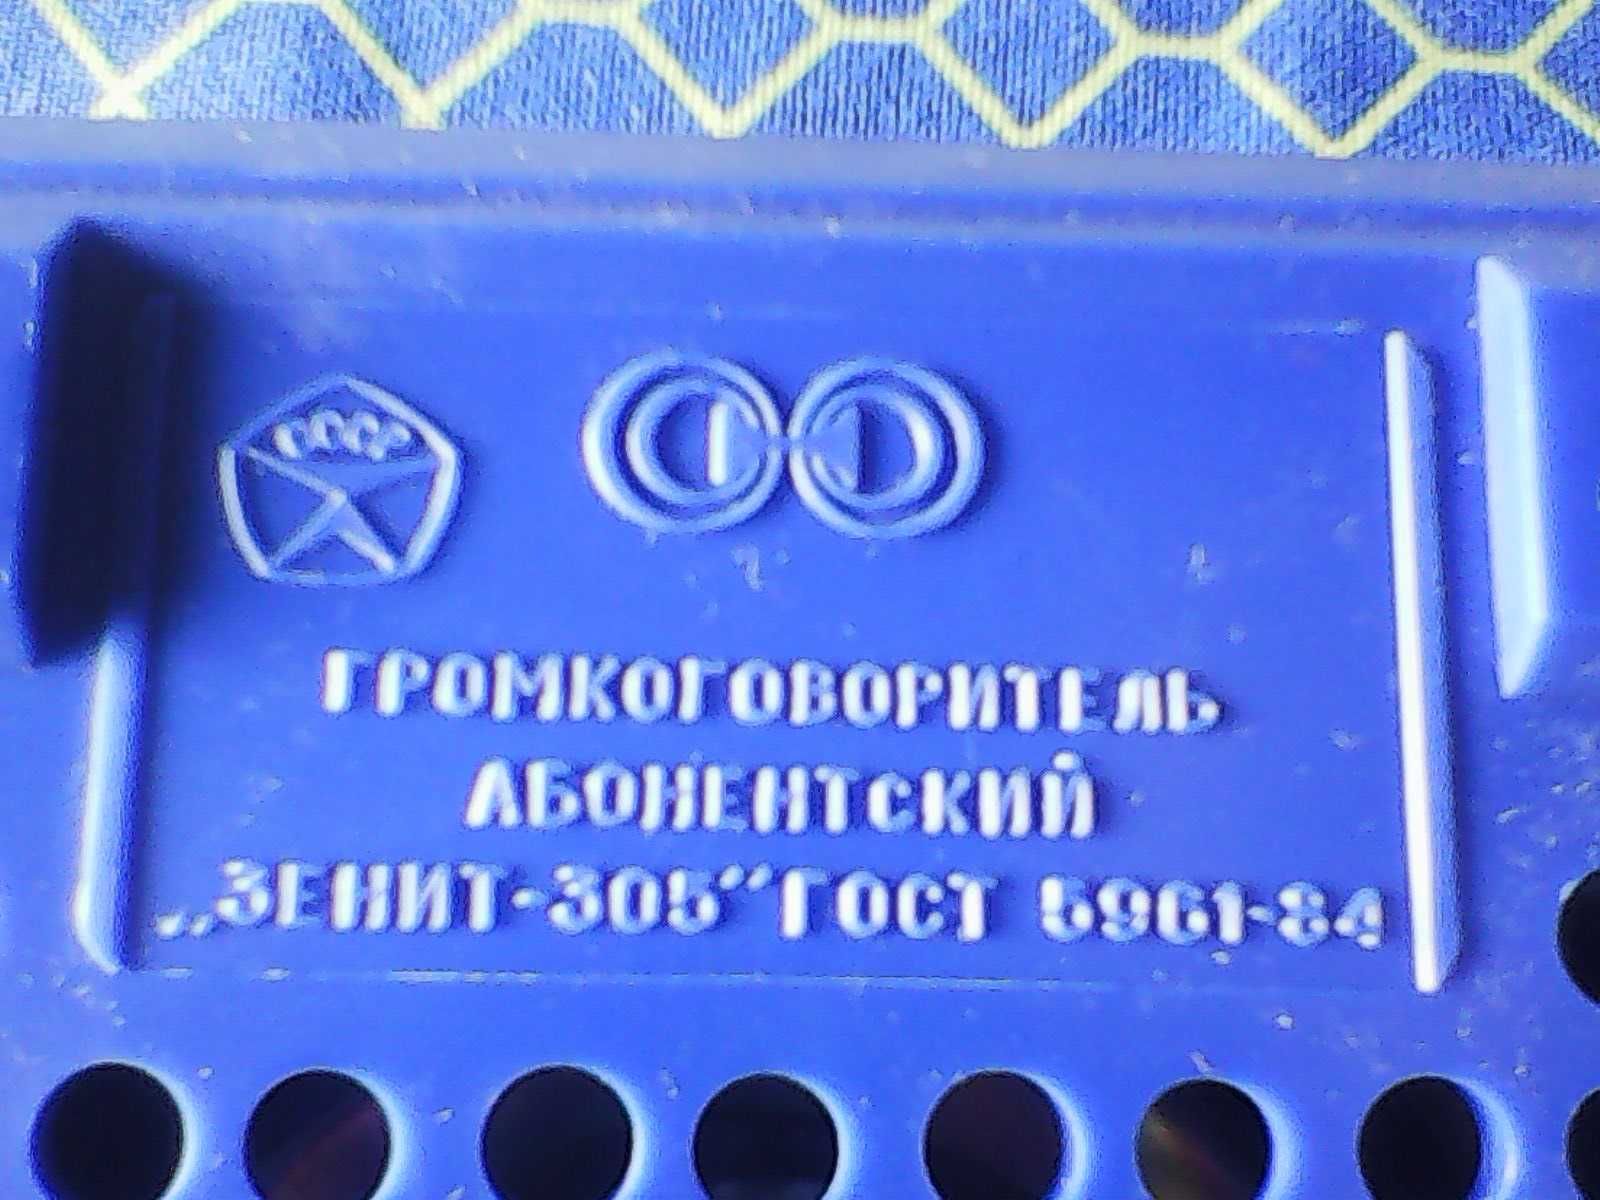 Радіоточка  " Зеніт -305"